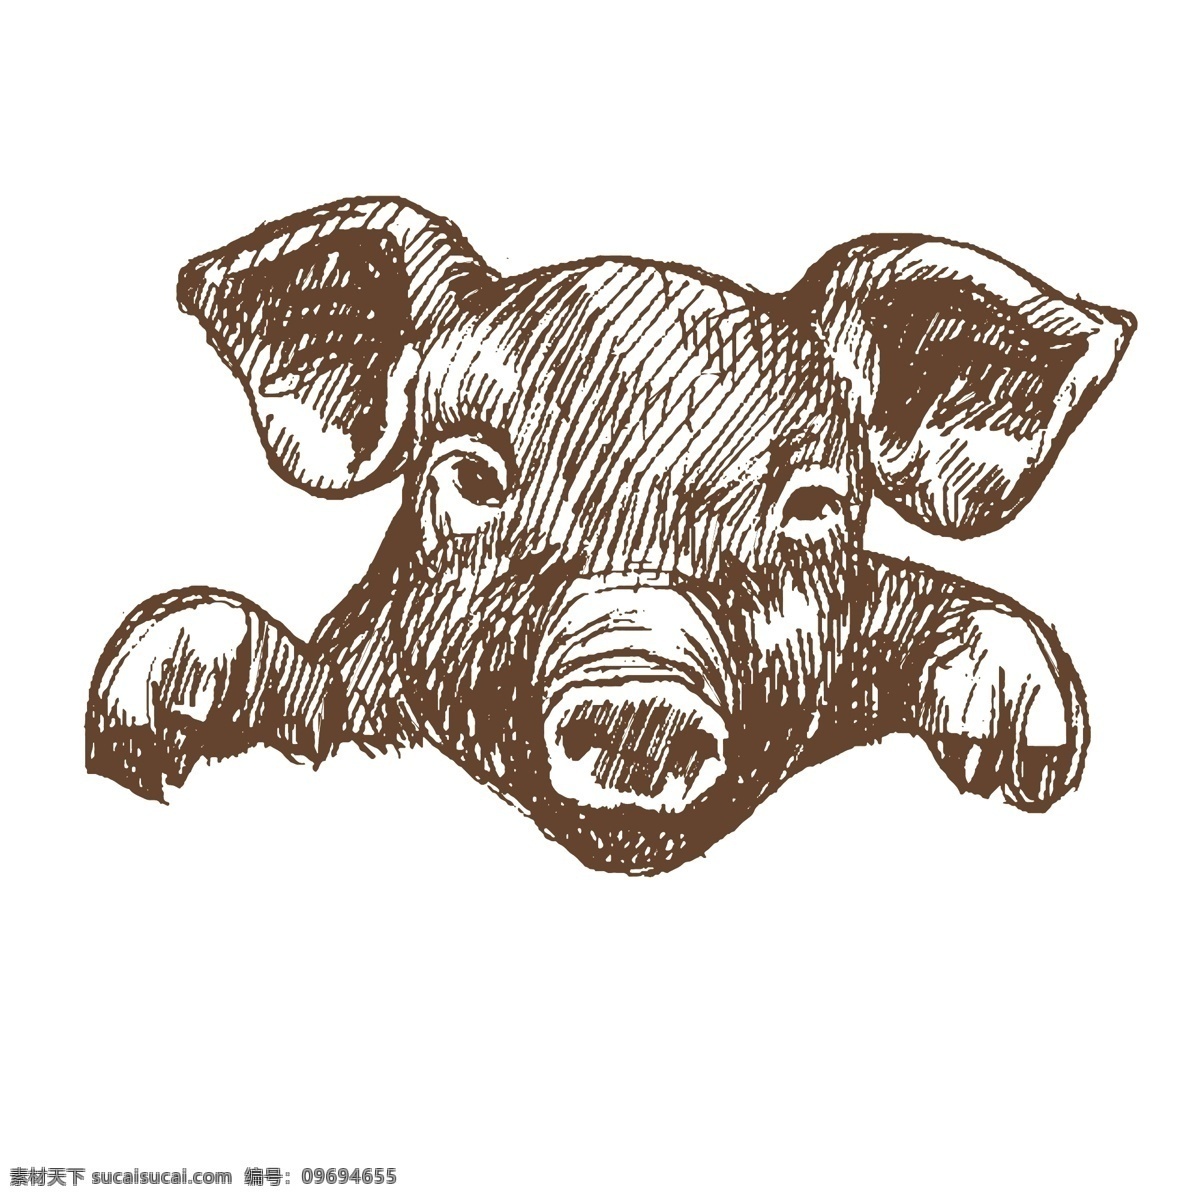 猪年 矢量 卡通 猪 卡通猪 金猪送福 金元宝 可爱猪 春节猪素材 猪年素材 猪猪 猪女人 广告猪 猪你妹 卡通小猪 猪年海报 猪素材 文创猪 卡通动物 泥里的猪 洗澡的猪 动漫动画